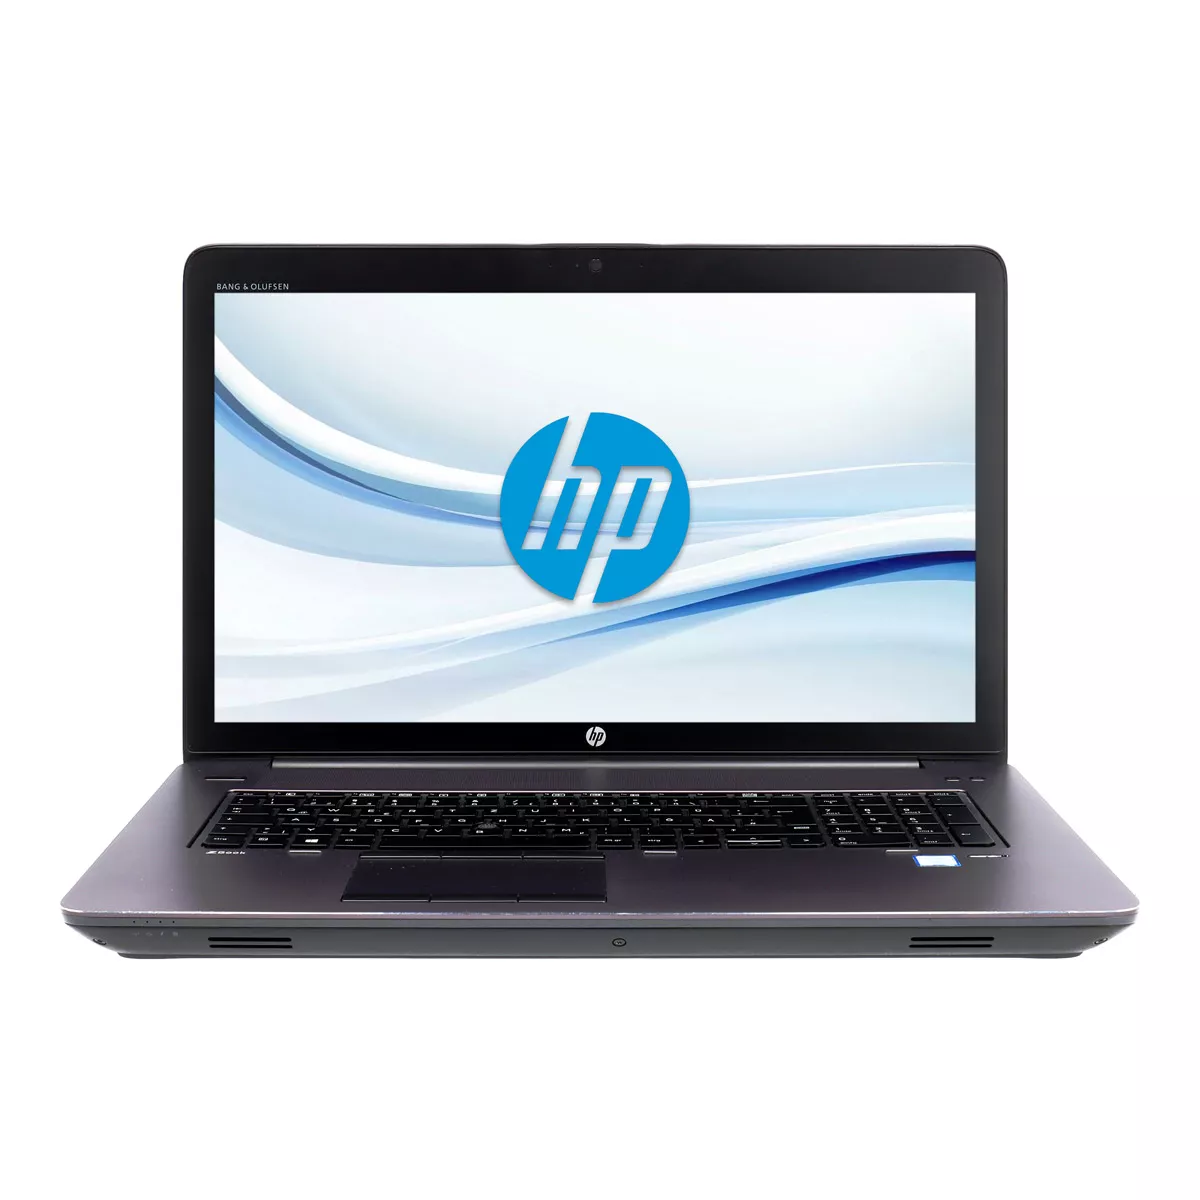 HP ZBook 17 G3 Core i7 6820HQ nVidia Quadro M3000M 4,0 GB Full-HD 500 GB M.2 SSD Webcam A